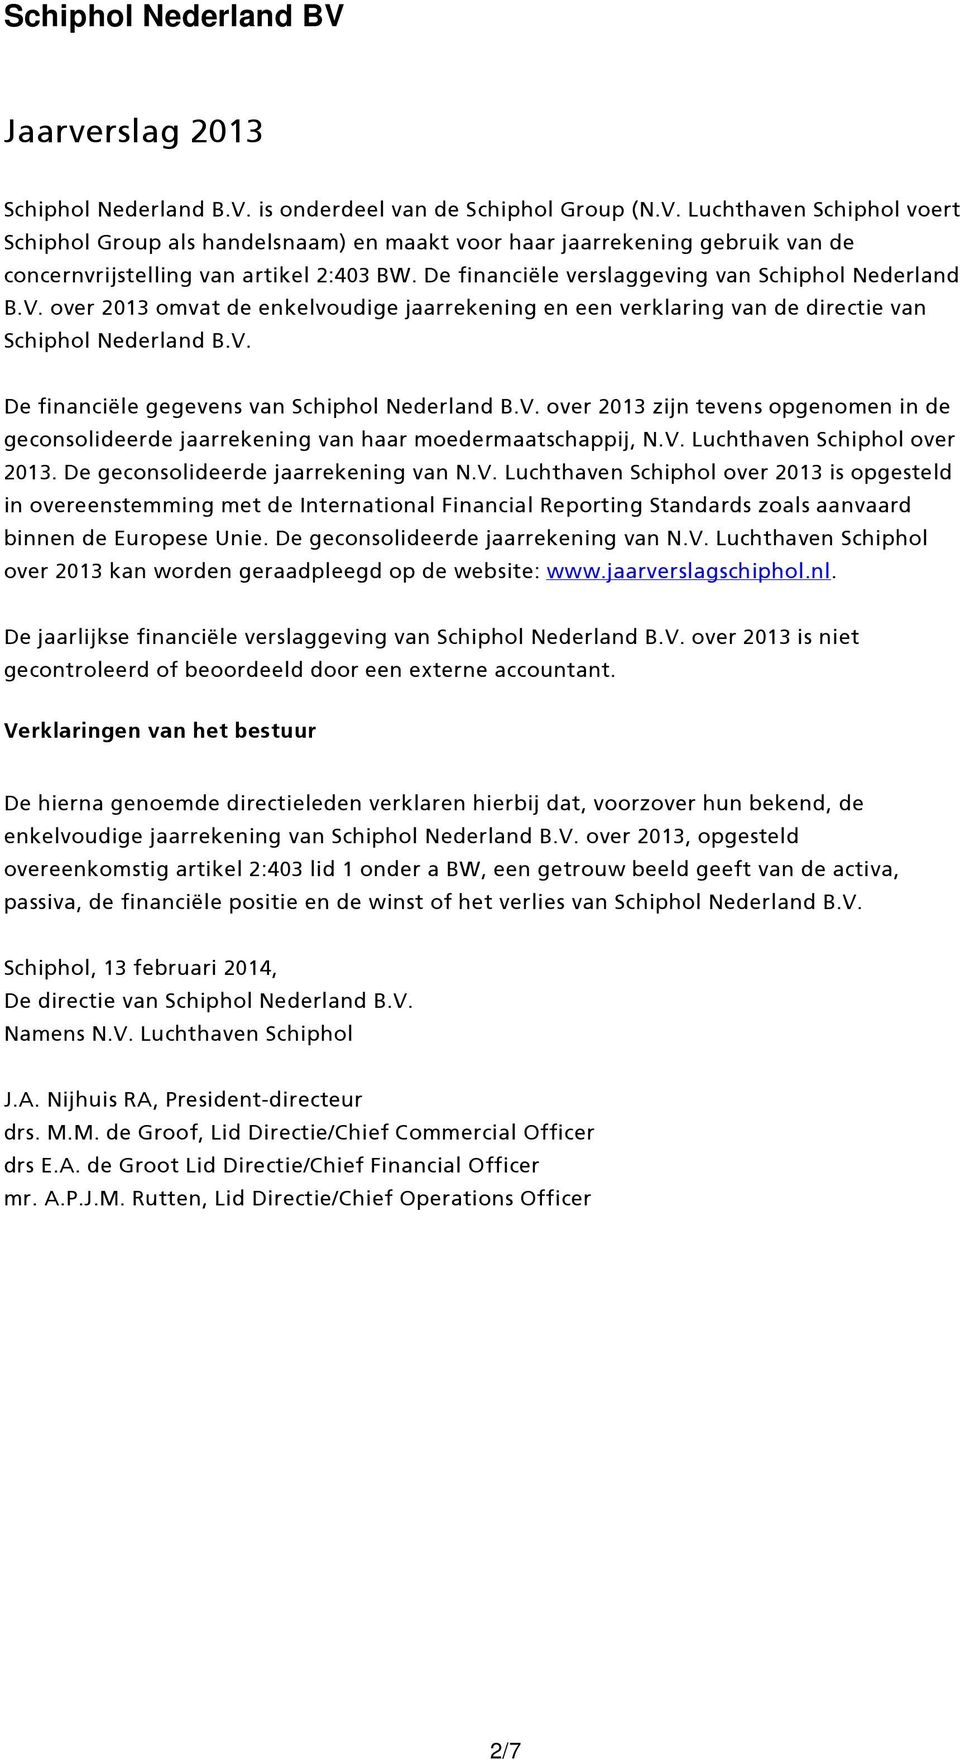 V. over 2013 zijn tevens opgenomen in de geconsolideerde jaarrekening van haar moedermaatschappij, N.V. Luchthaven Schiphol over 2013. De geconsolideerde jaarrekening van N.V. Luchthaven Schiphol over 2013 is opgesteld in overeenstemming met de International Financial Reporting Standards zoals aanvaard binnen de Europese Unie.